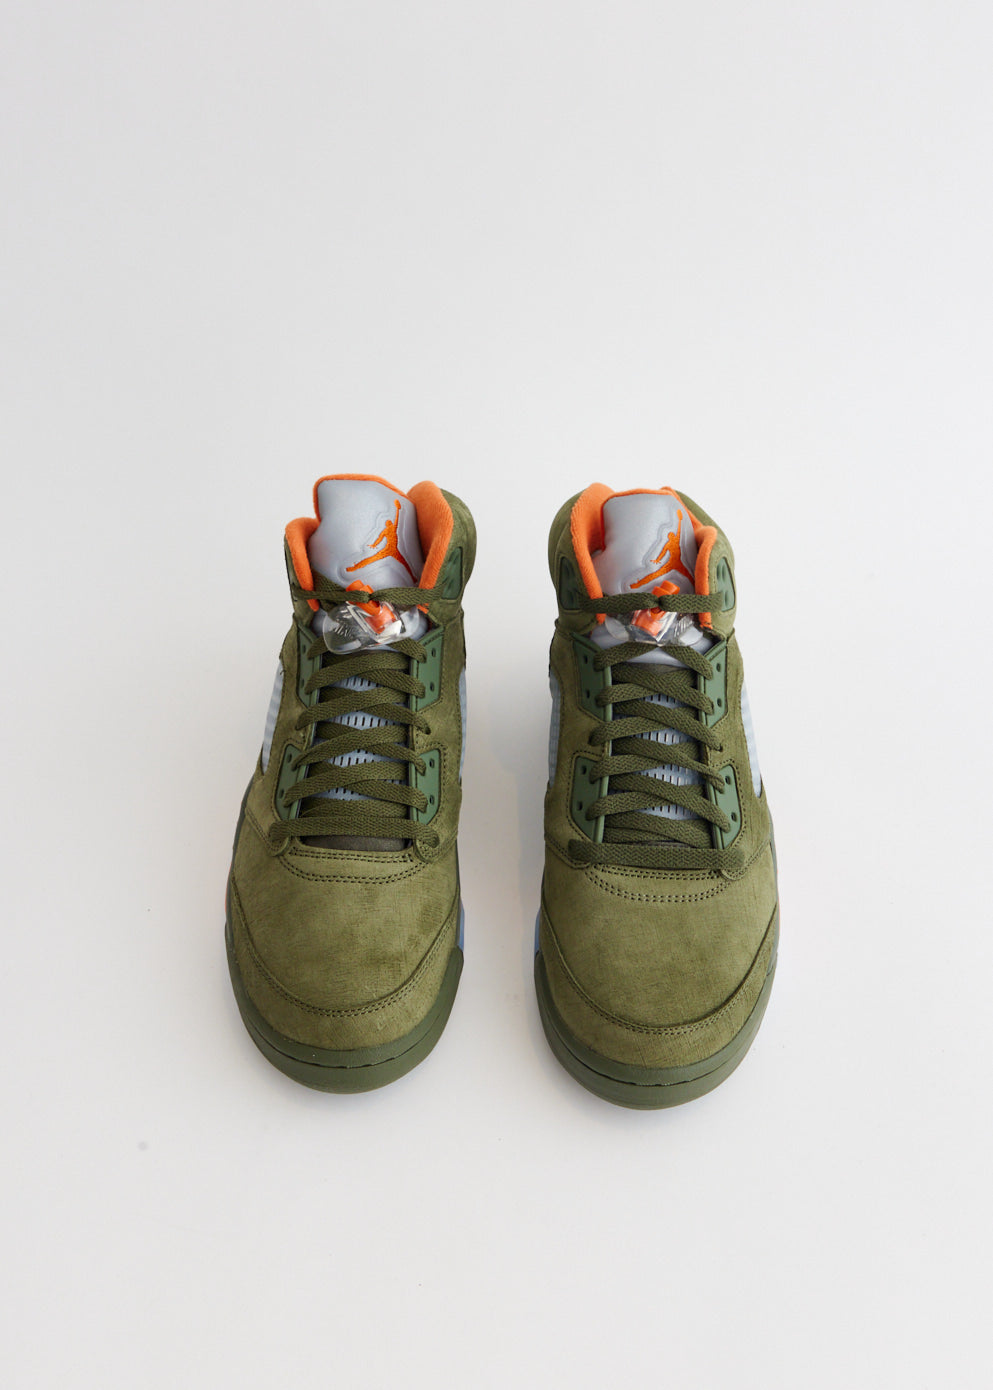 Air Jordan 5 Retro 'Olive' Sneakers